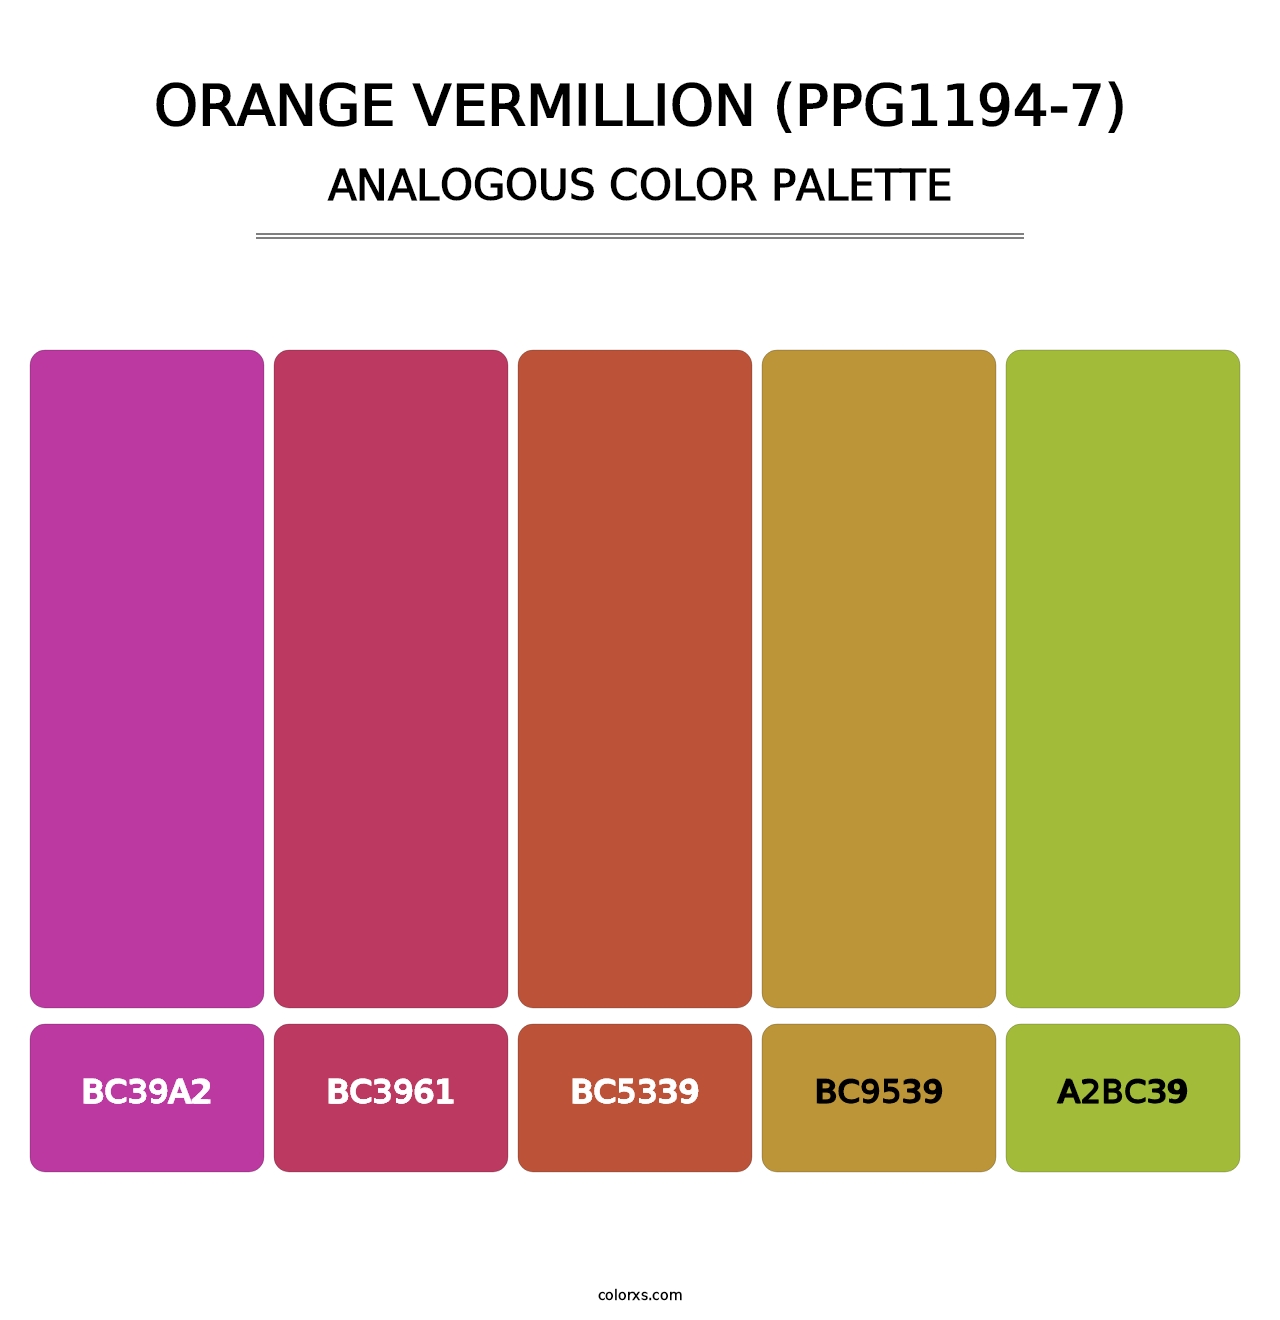 Orange Vermillion (PPG1194-7) - Analogous Color Palette